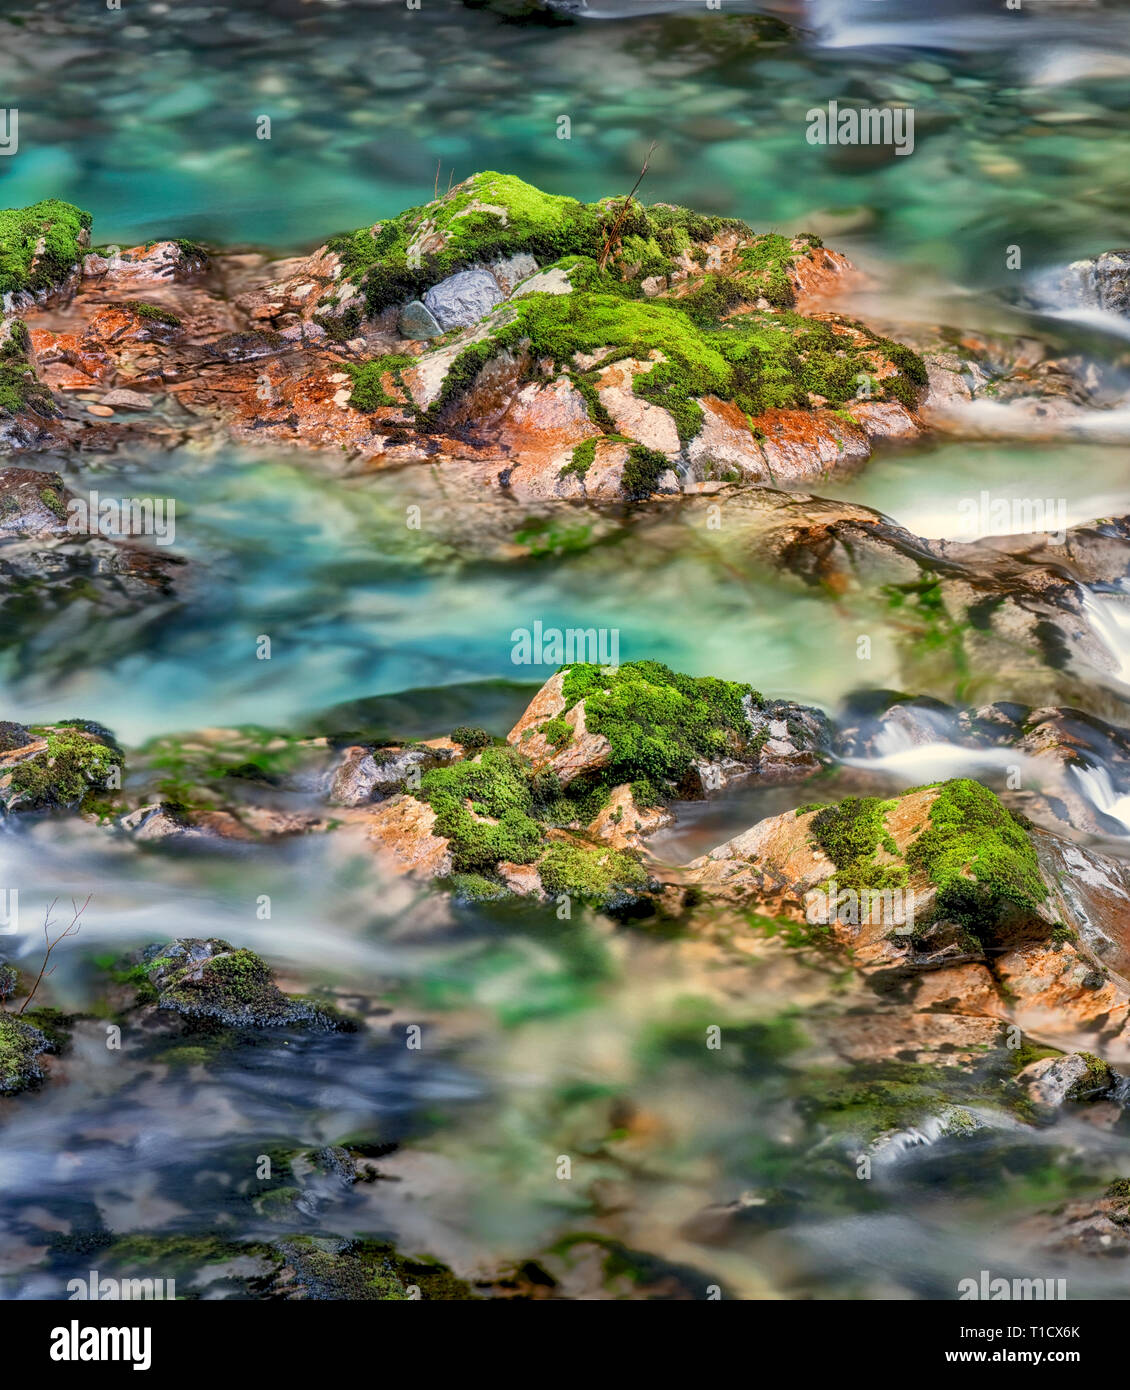 Peu au nord de la rivière avec des rochers colorés Santiam et piscines. Opal Creek Scenic Zone de loisirs, Oregon Banque D'Images